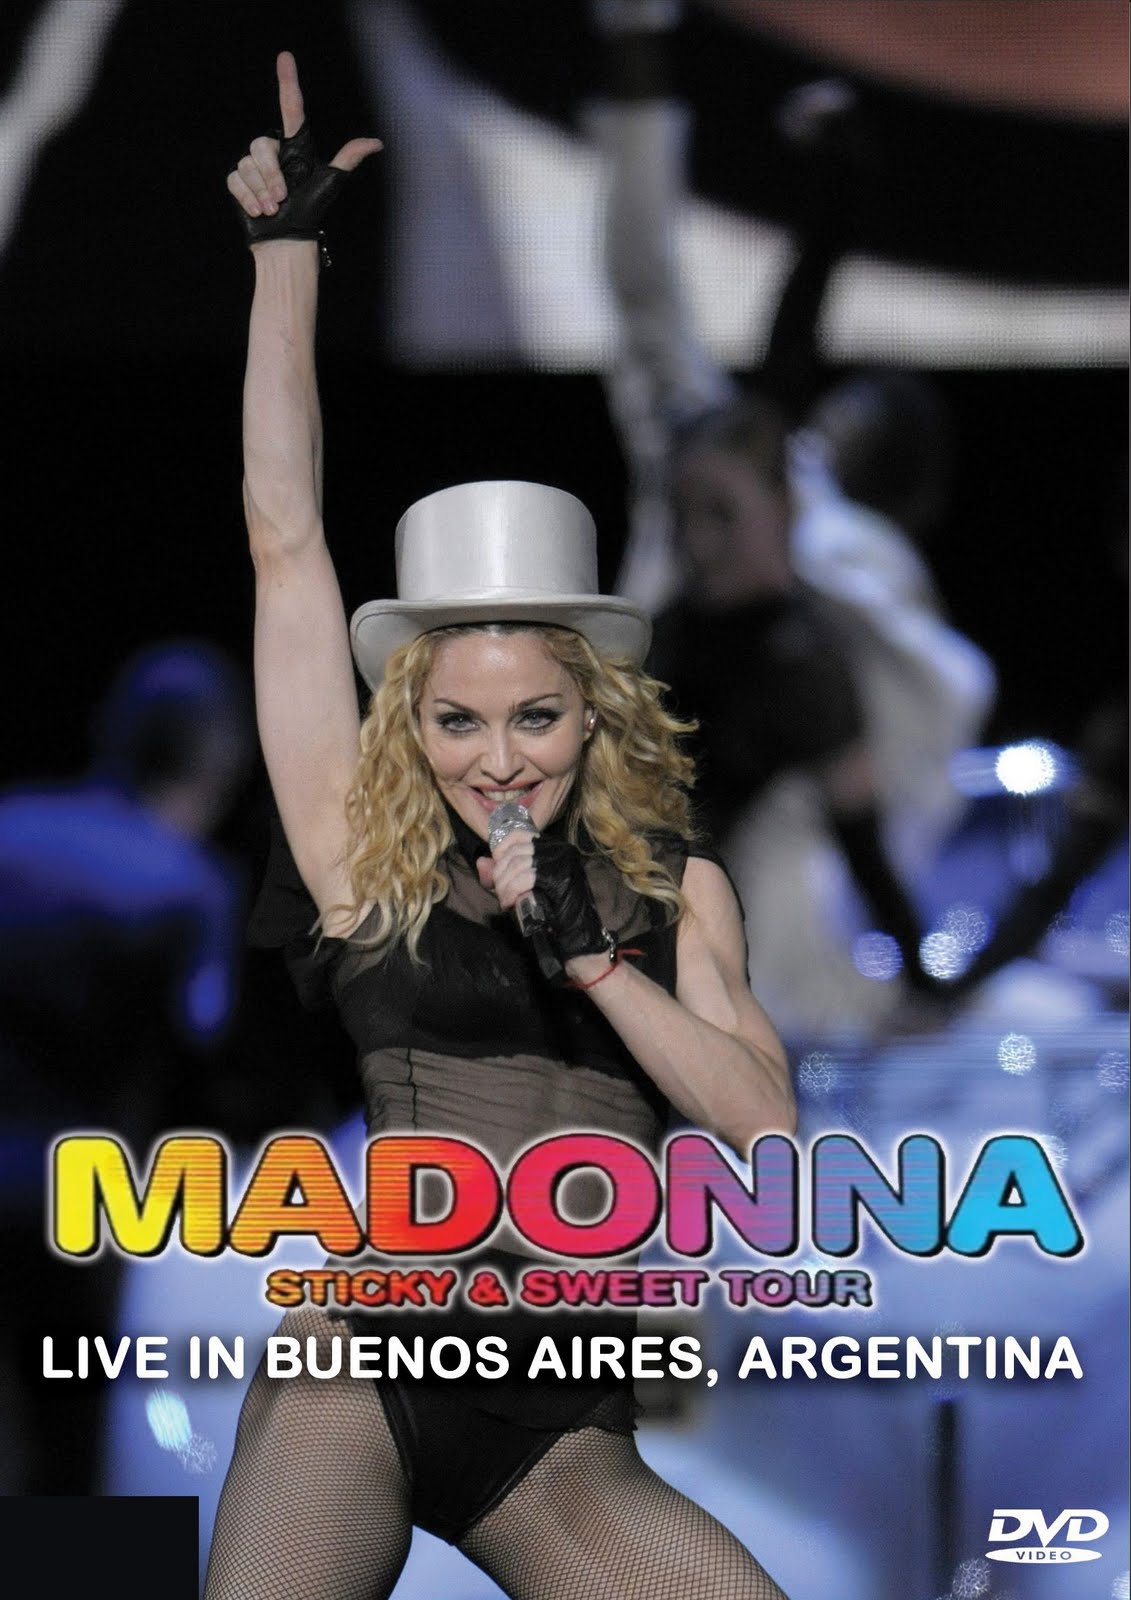 http://3.bp.blogspot.com/_BHjFbdBeONg/S7eO0WfIOQI/AAAAAAAABz4/uoT-8HRB3QE/s1600/Madonna+sticky.jpg